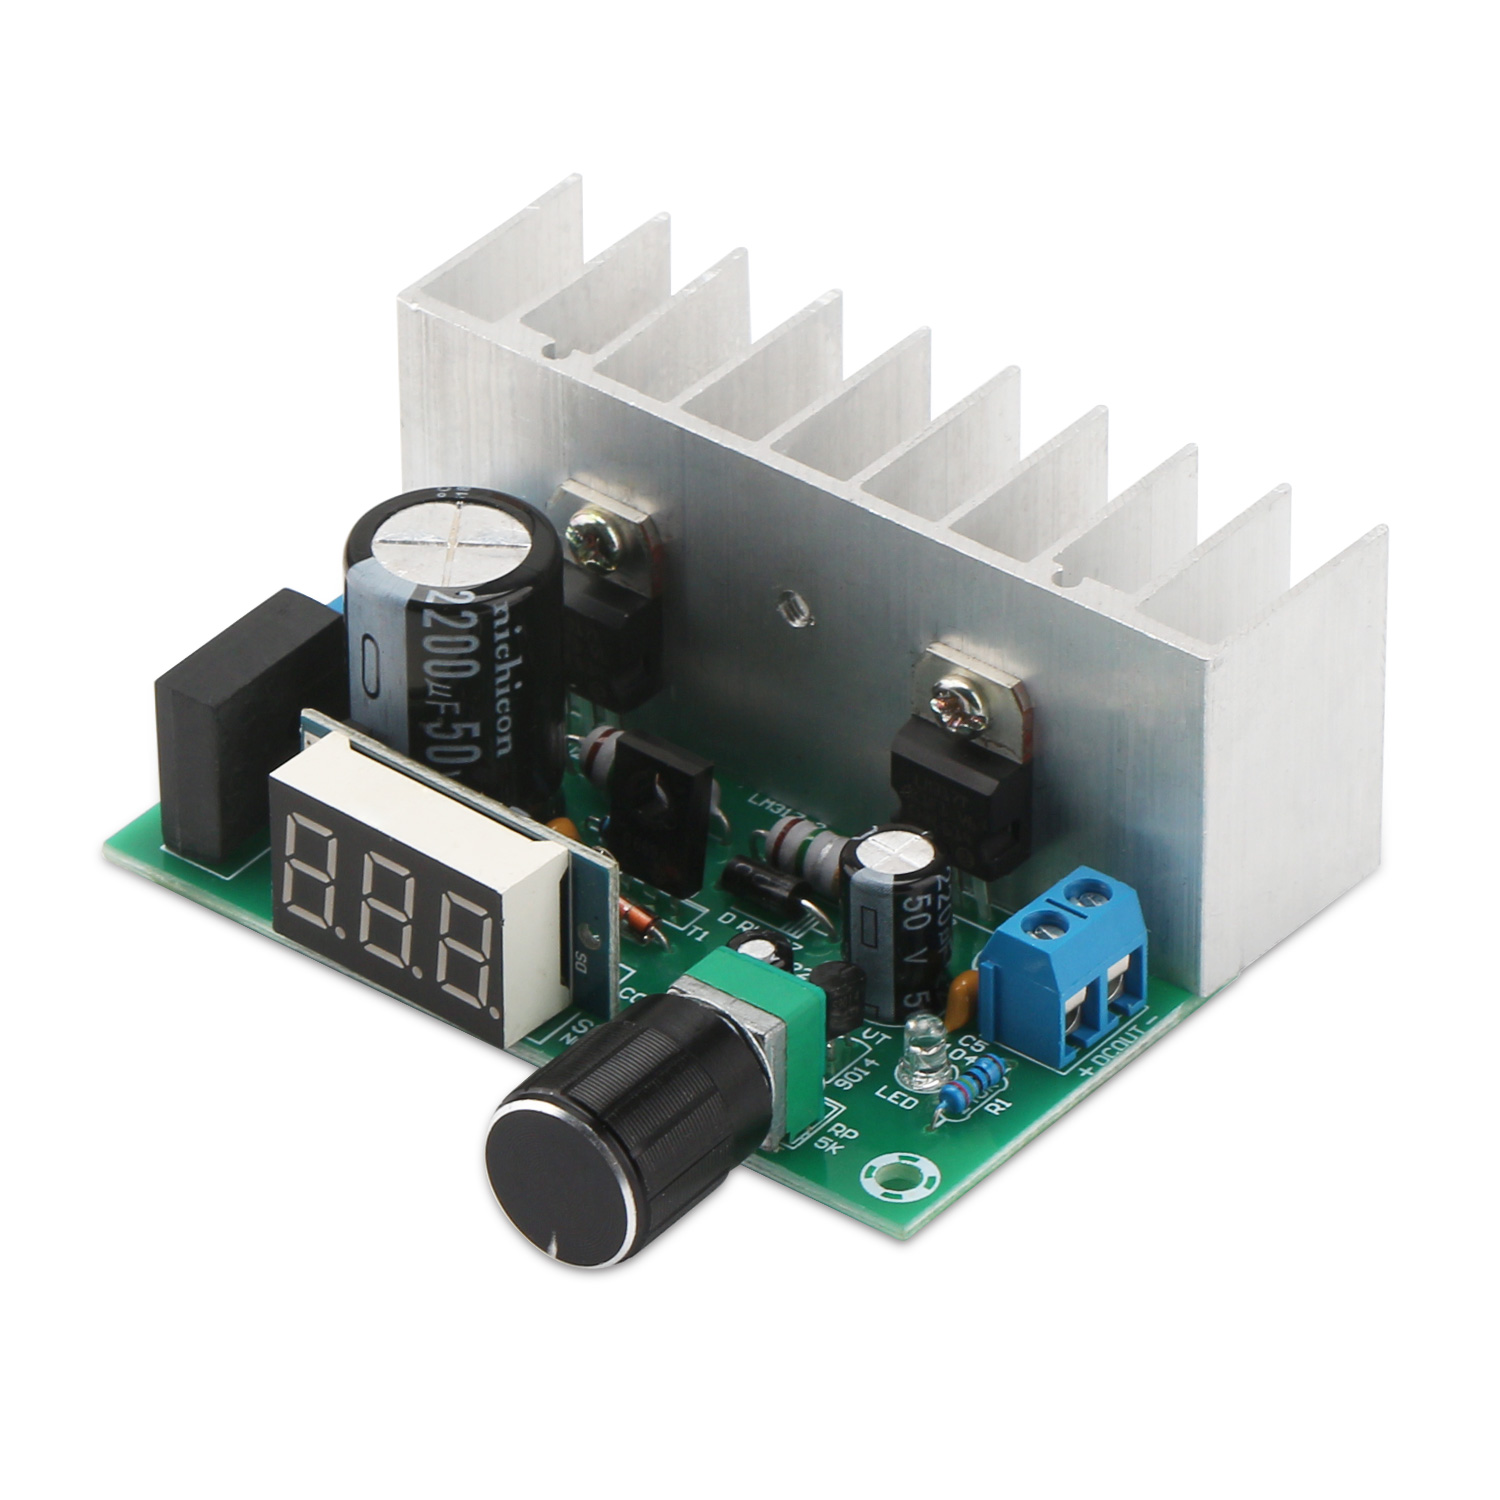 LM317 Digital Display Adjustable Power Supply  DC 1.25~32V Voltage Regulator